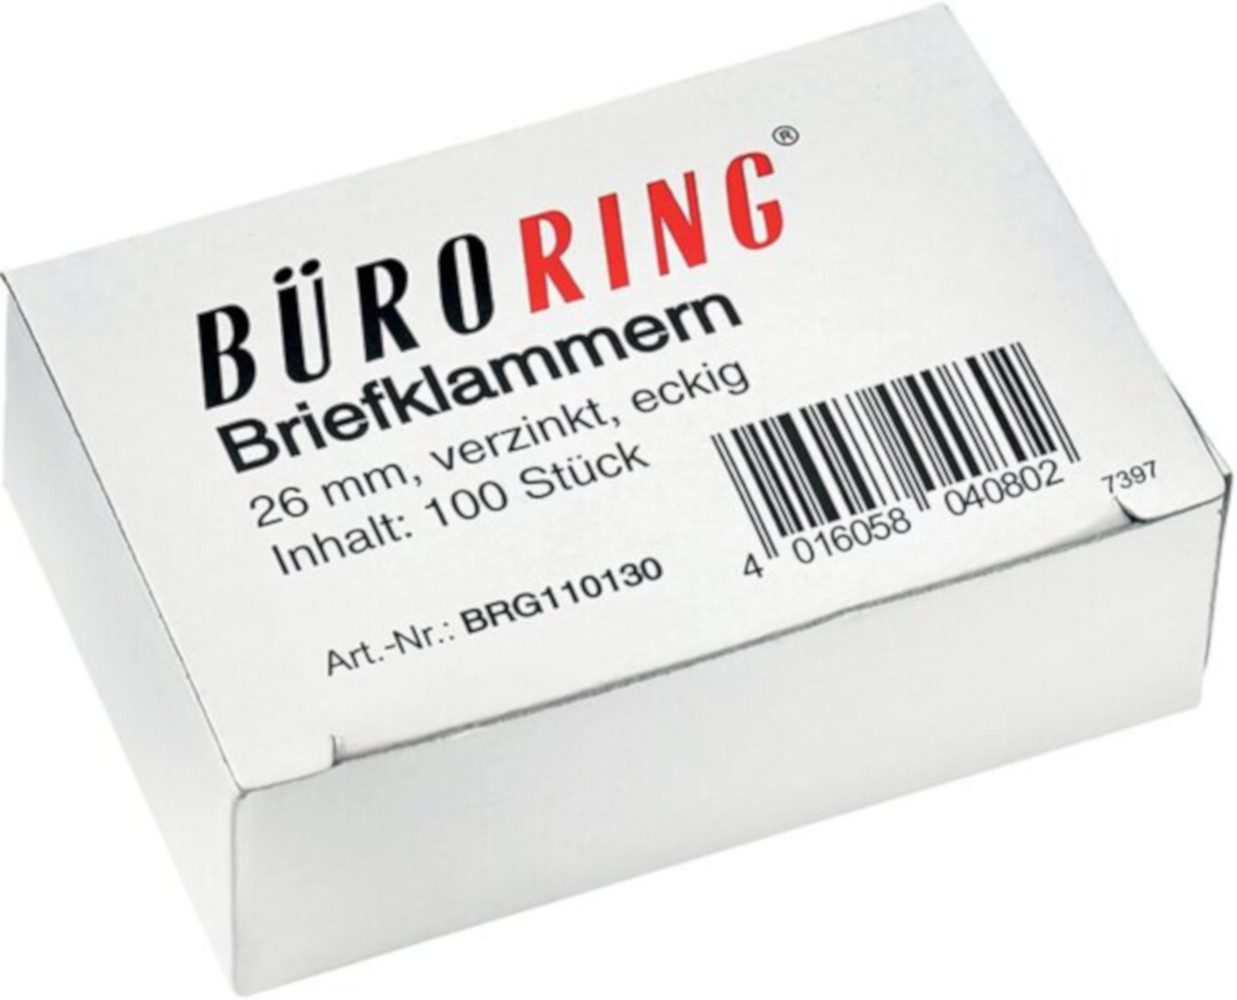 Büroklammer BÜRORING Briefklammern 26 mm 100 Stück BRG110130 verzinkt